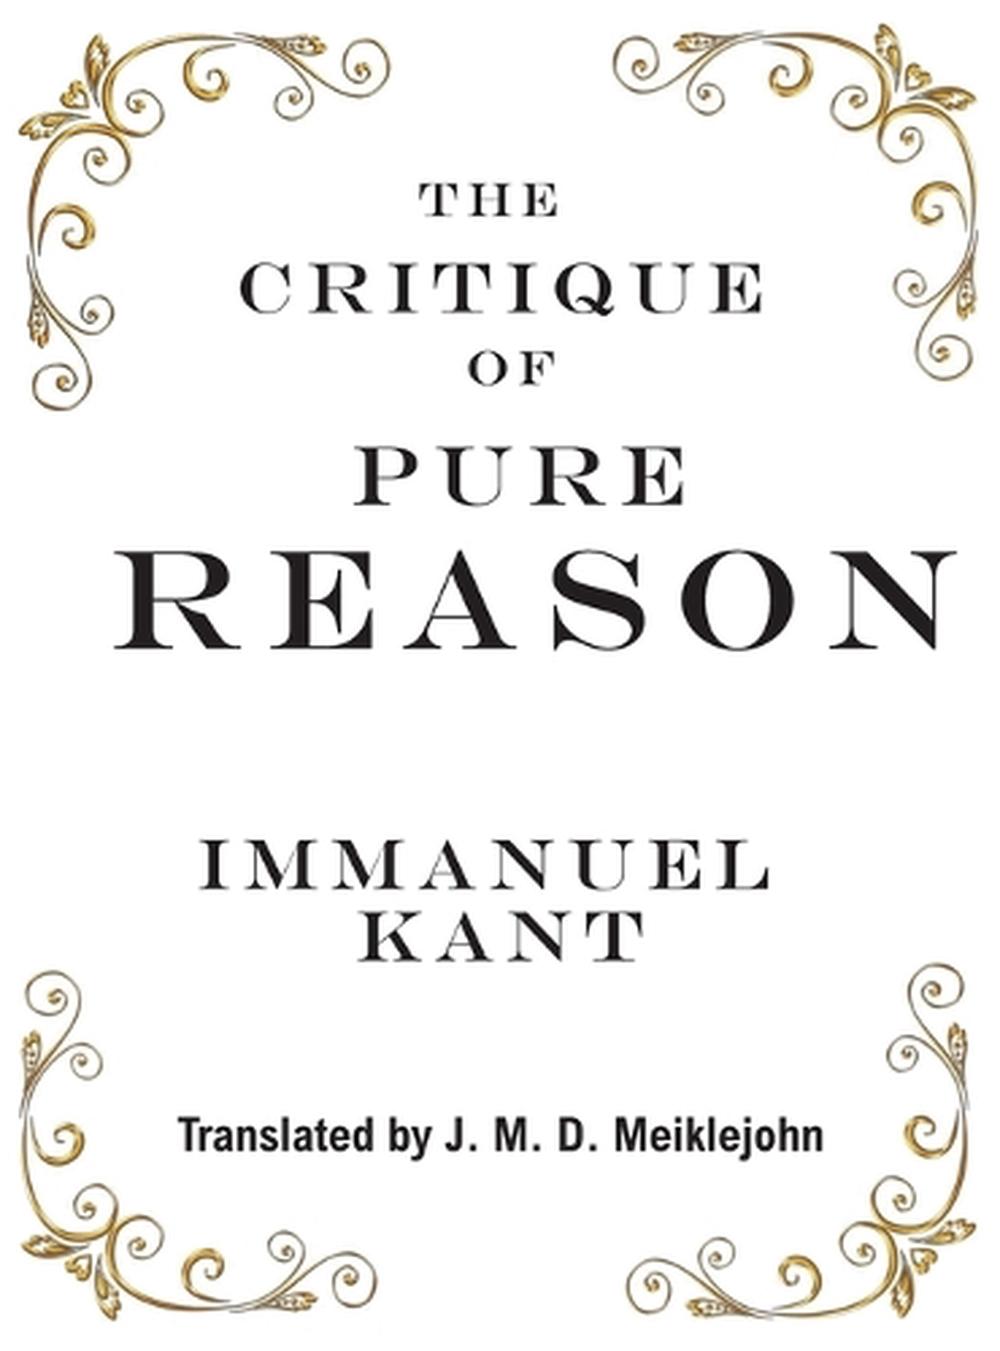 critique of pure reason